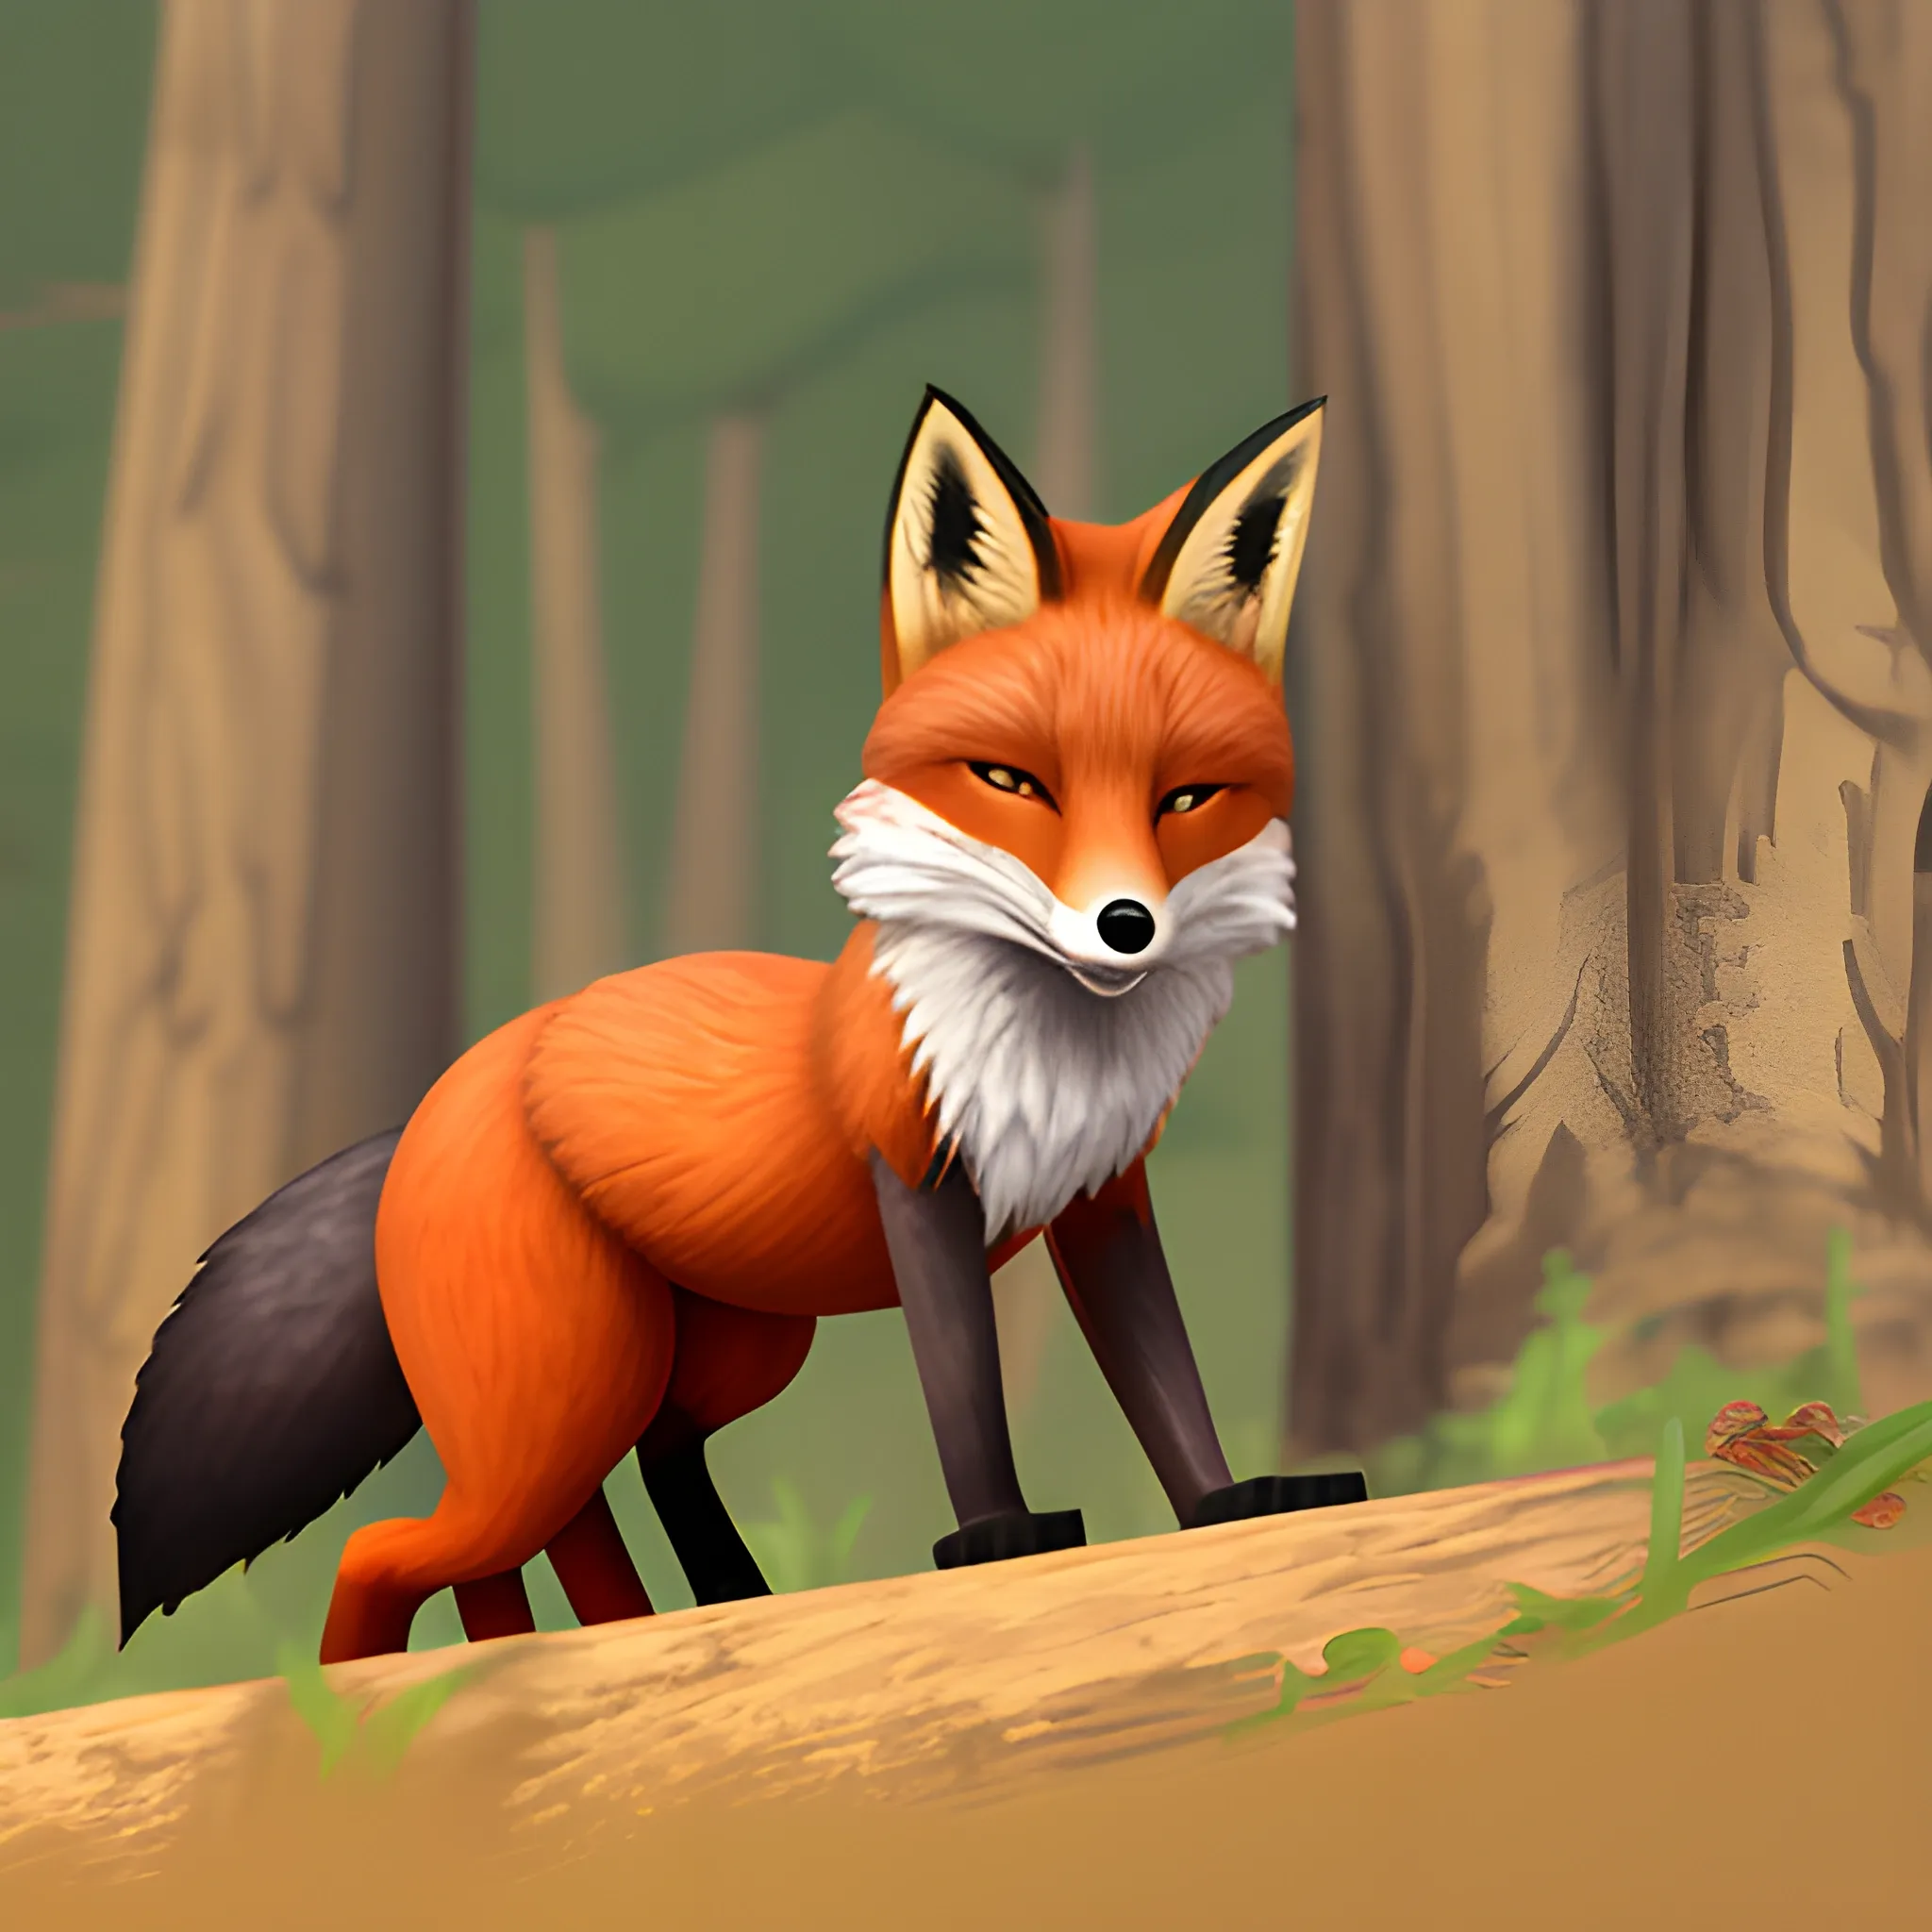 Fox thief - Arthub.ai